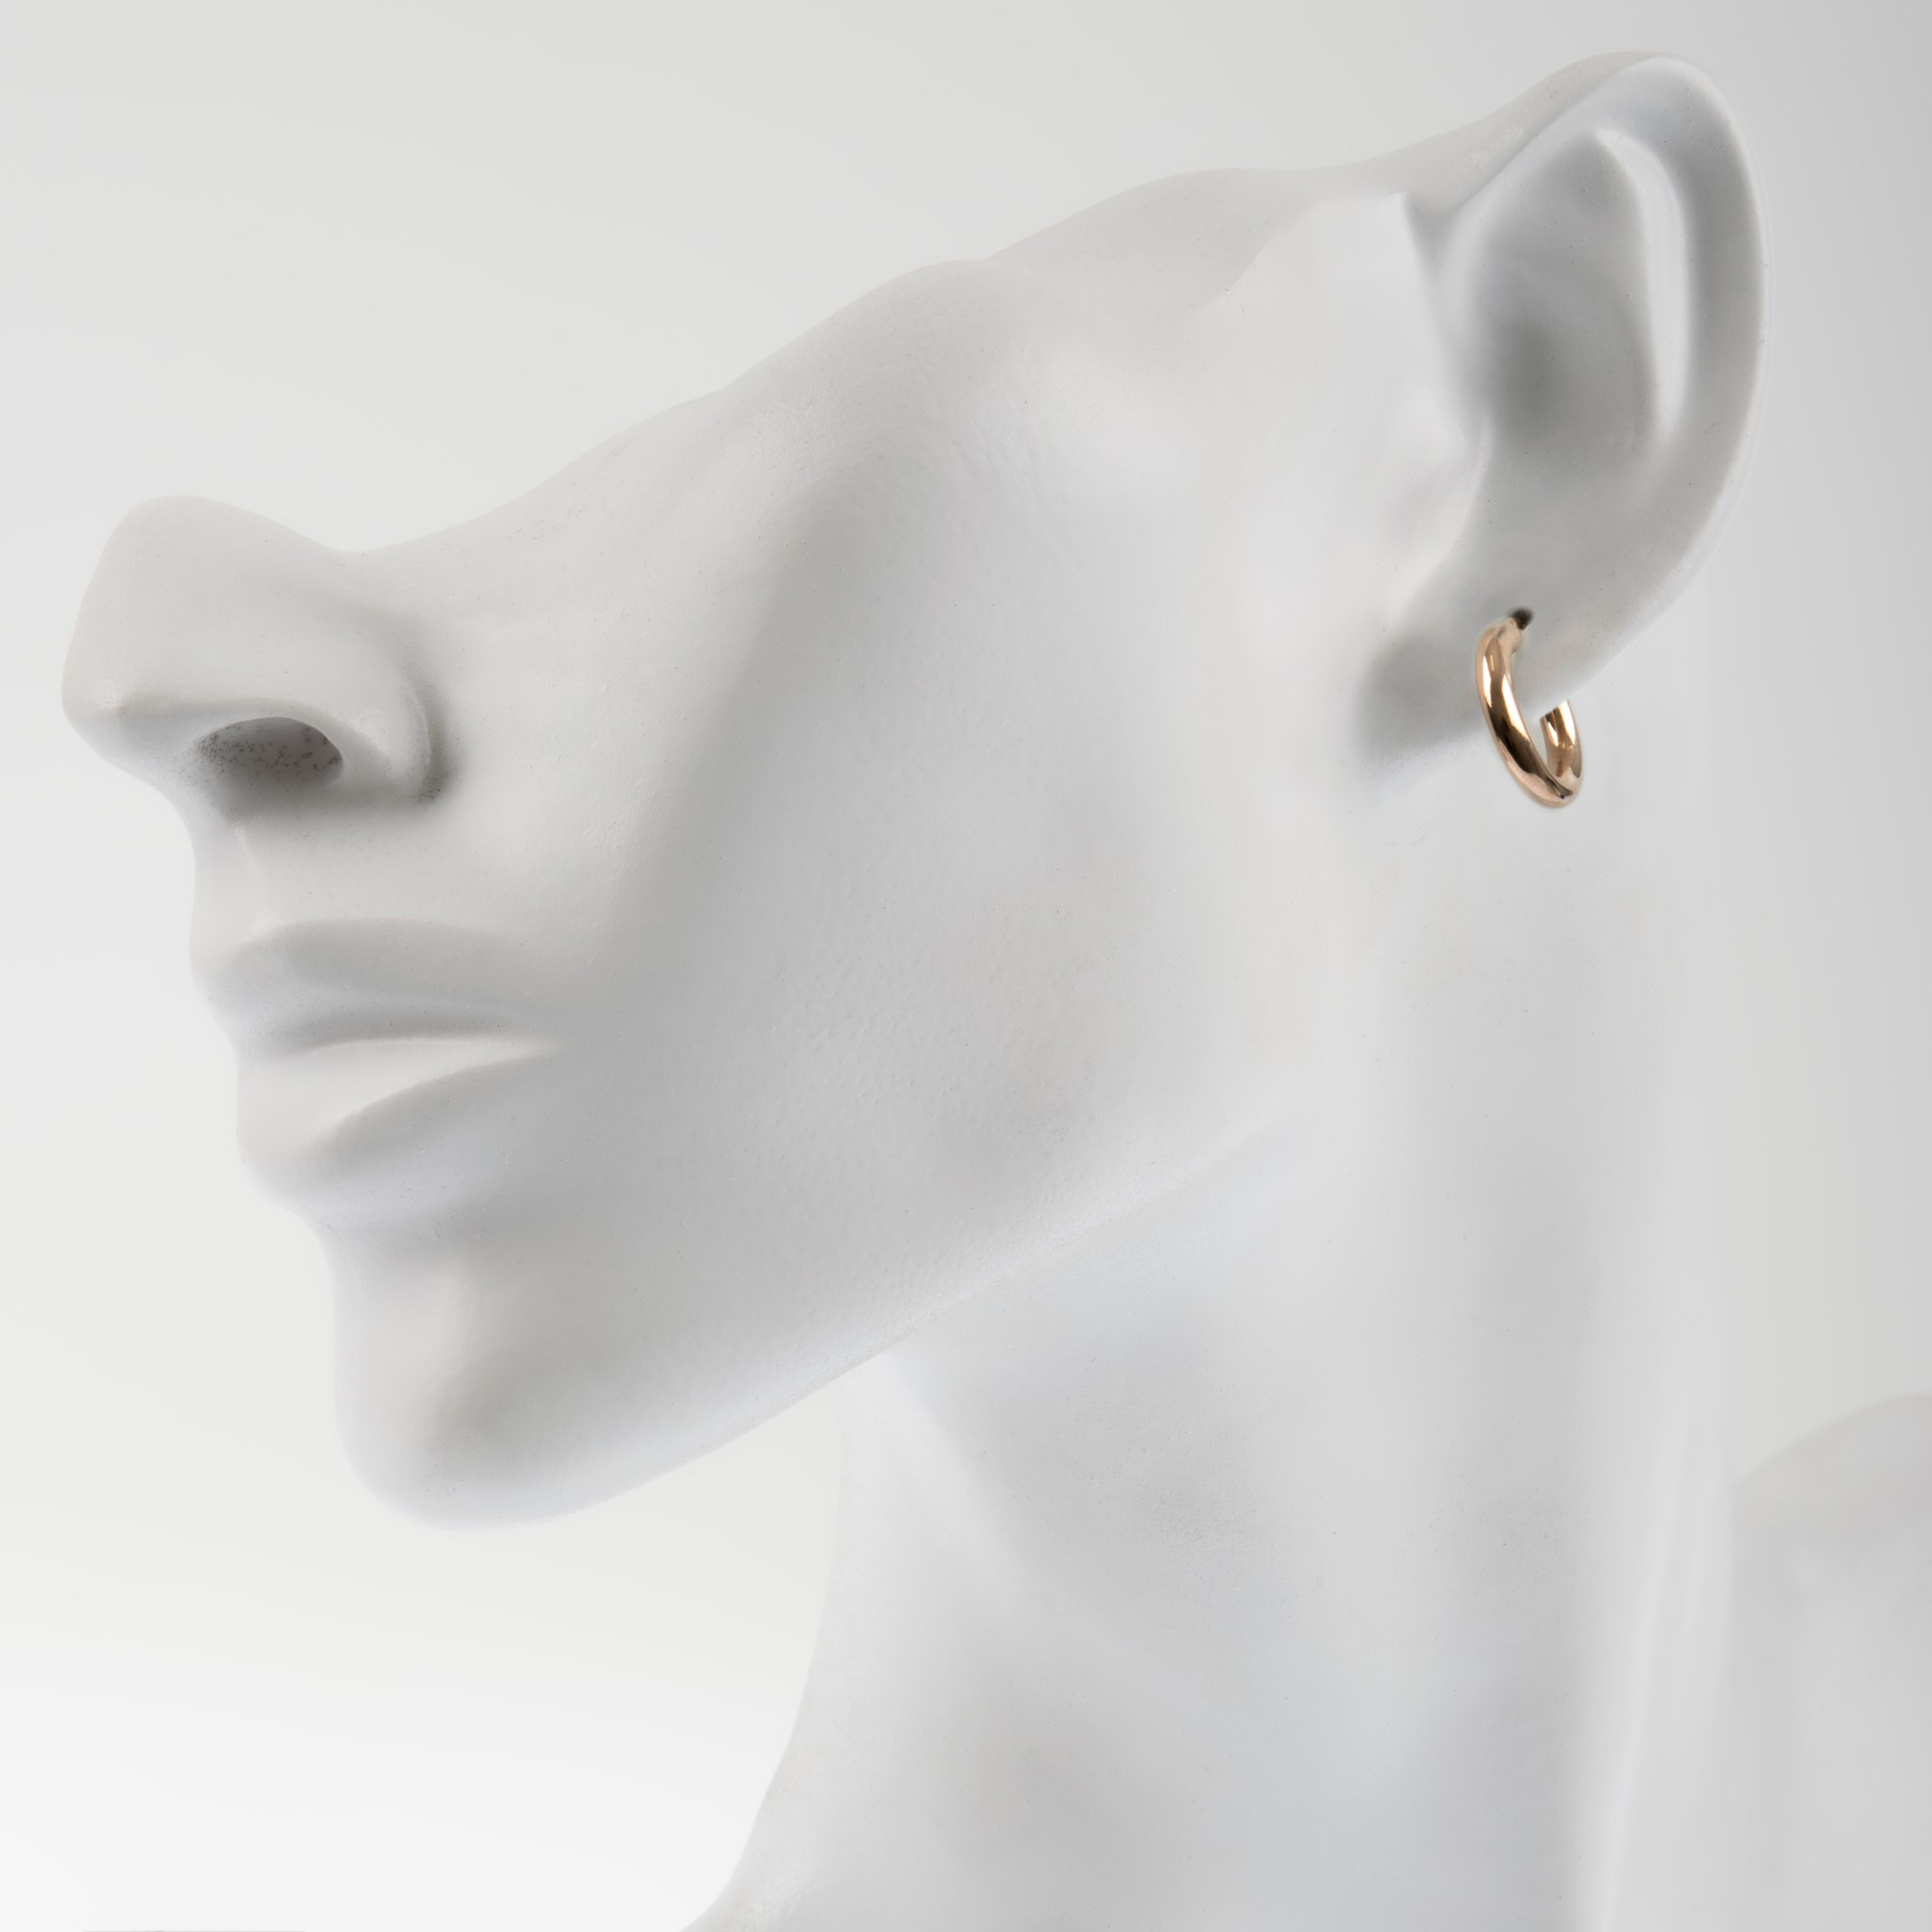 9ct Rose Gold 15mm Chunky Hoop Earrings | Buy Online | Free Insured UK ...